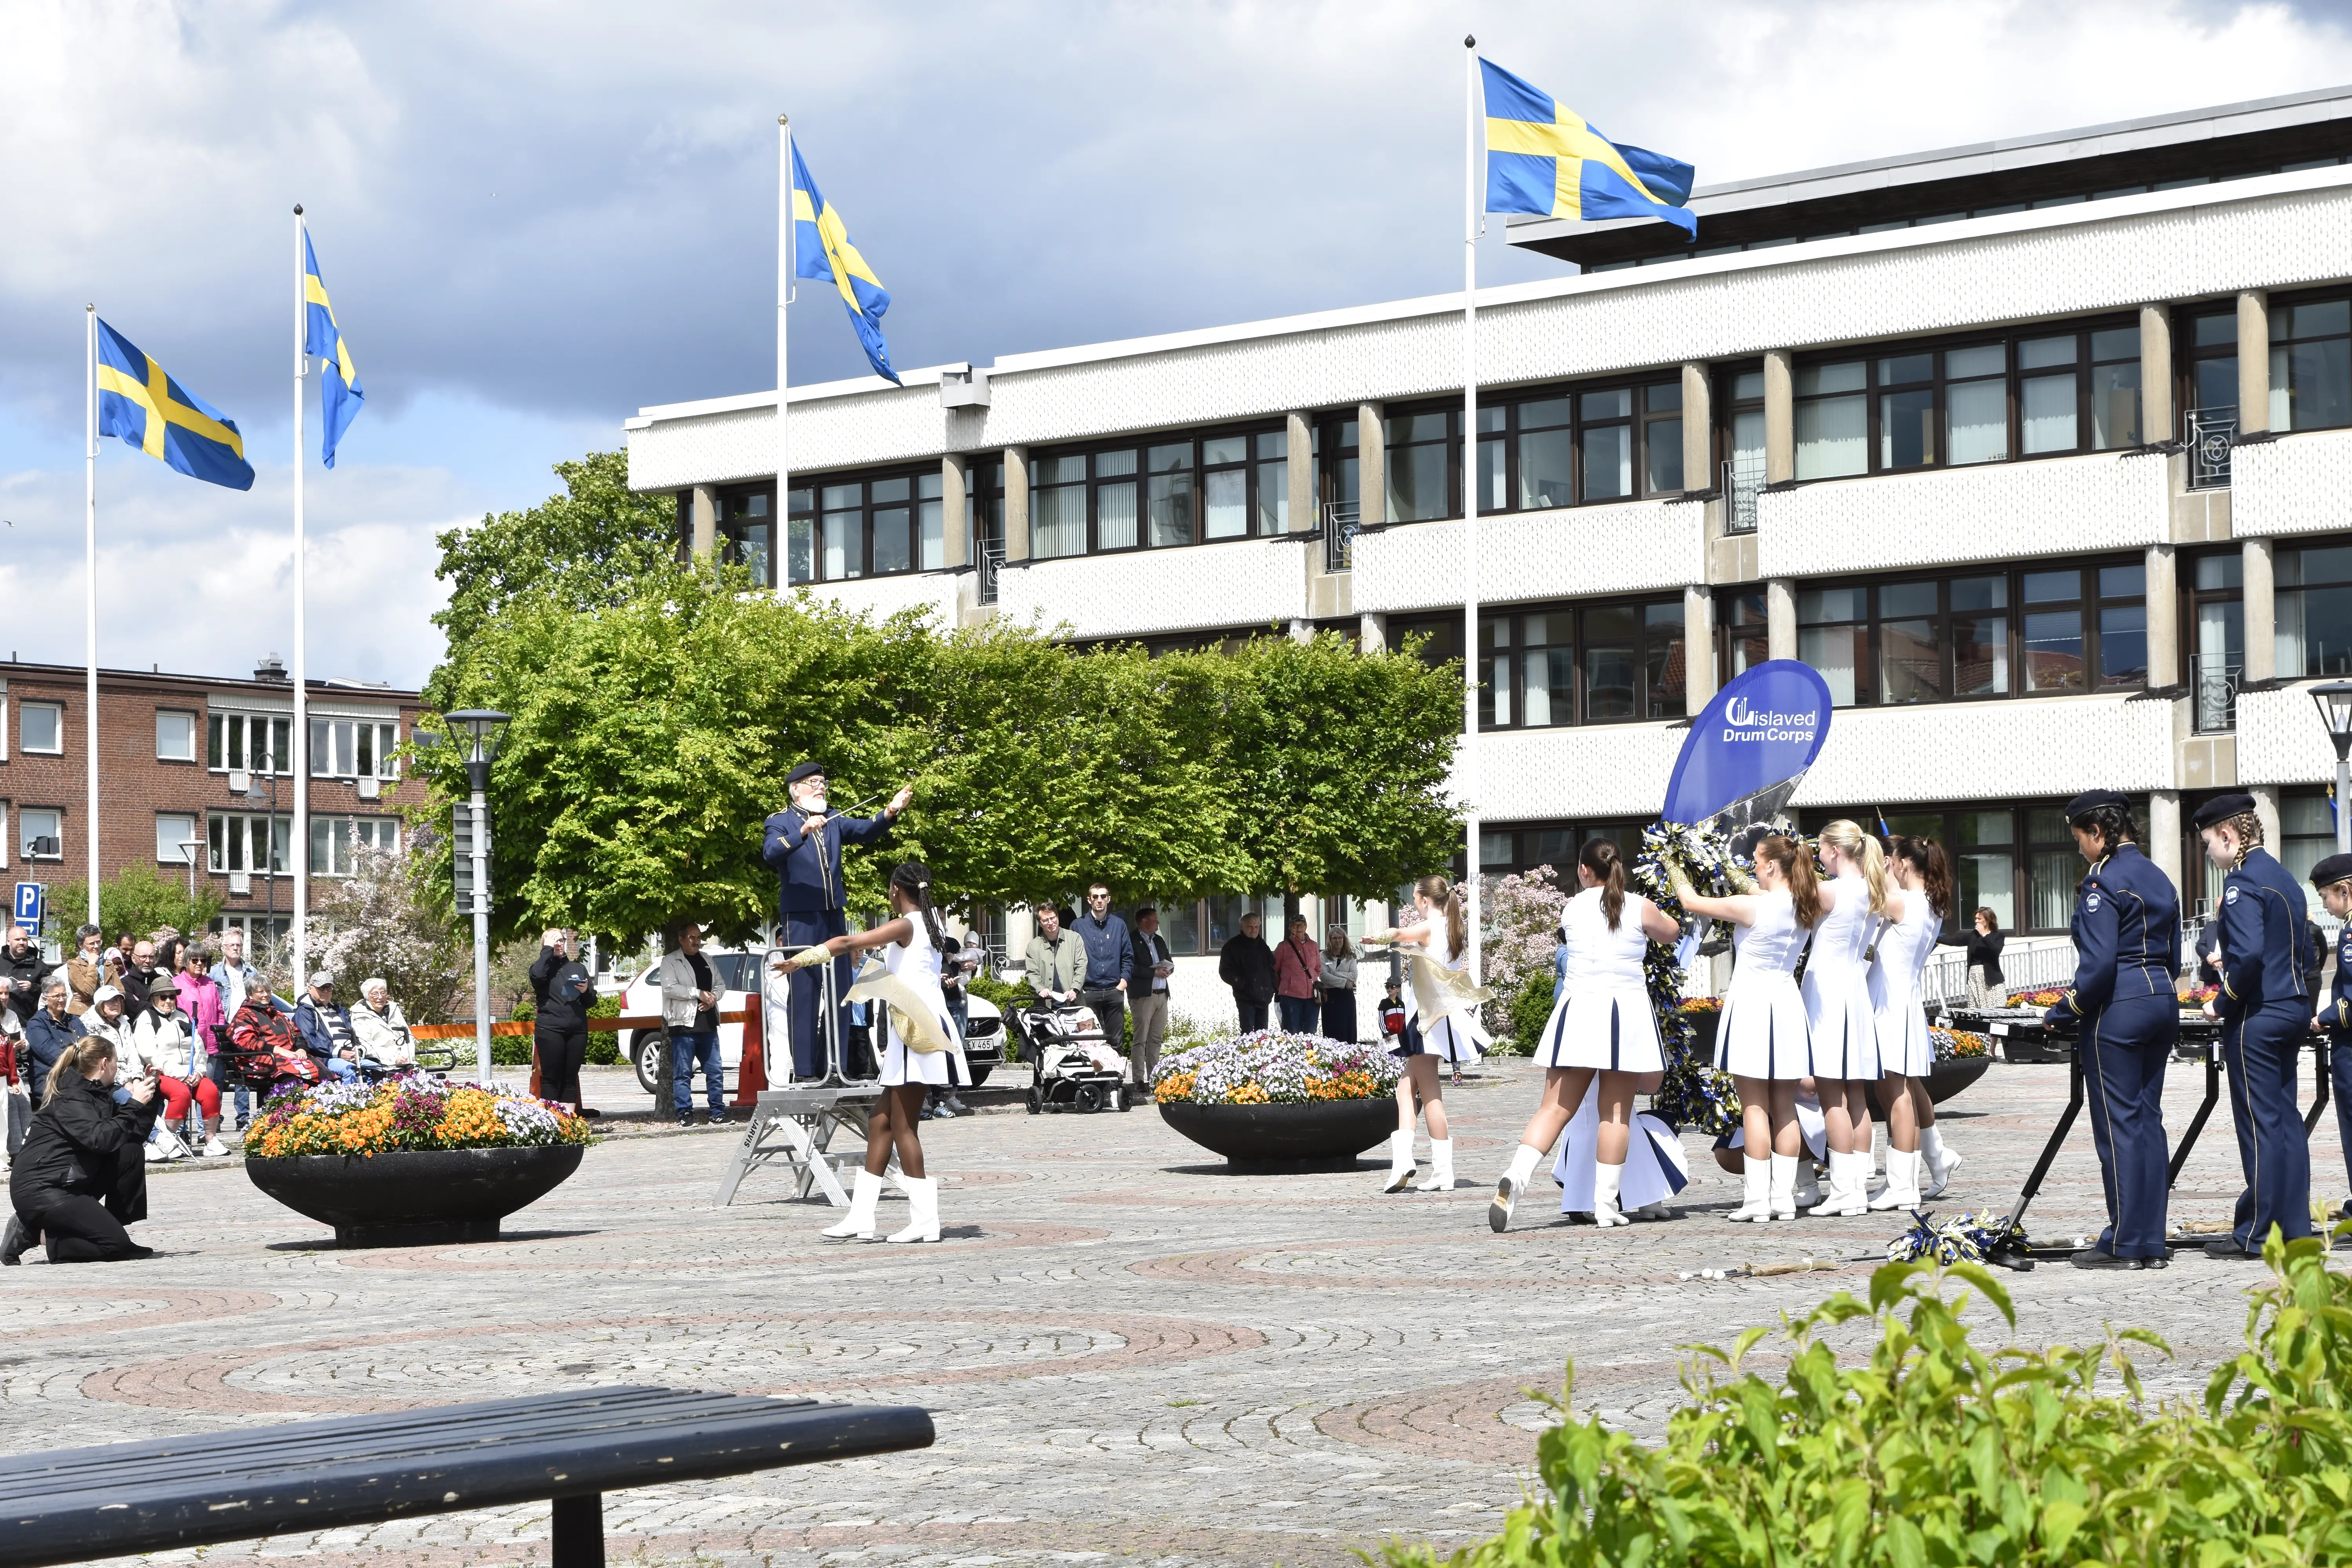 Ett torg med drillflickor och publik. I bakgrunden syns ett stort hus med fyra flaggstänger framför med Sverigeflaggan hissad.